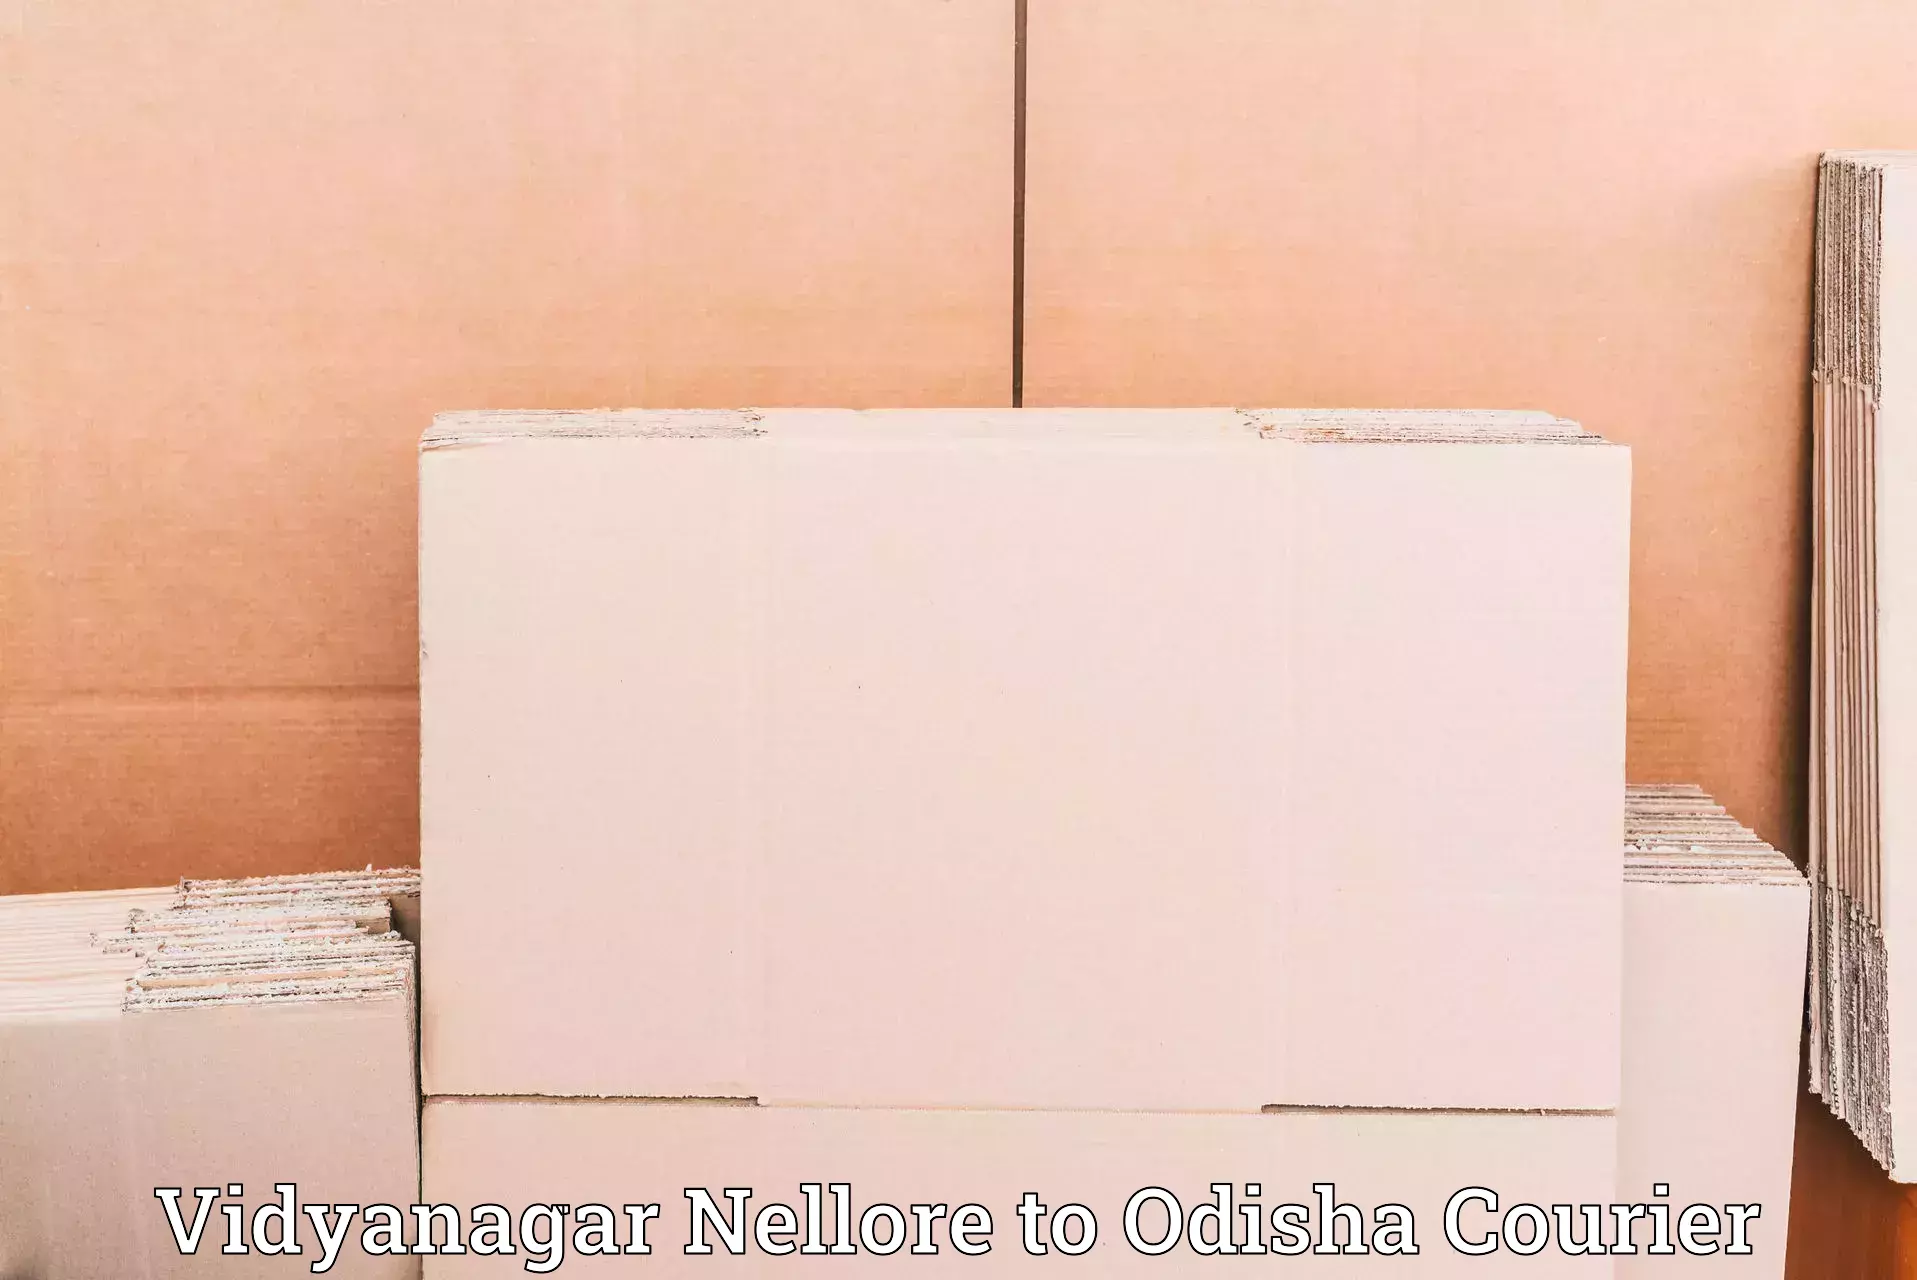 Reliable courier service Vidyanagar Nellore to Raruan